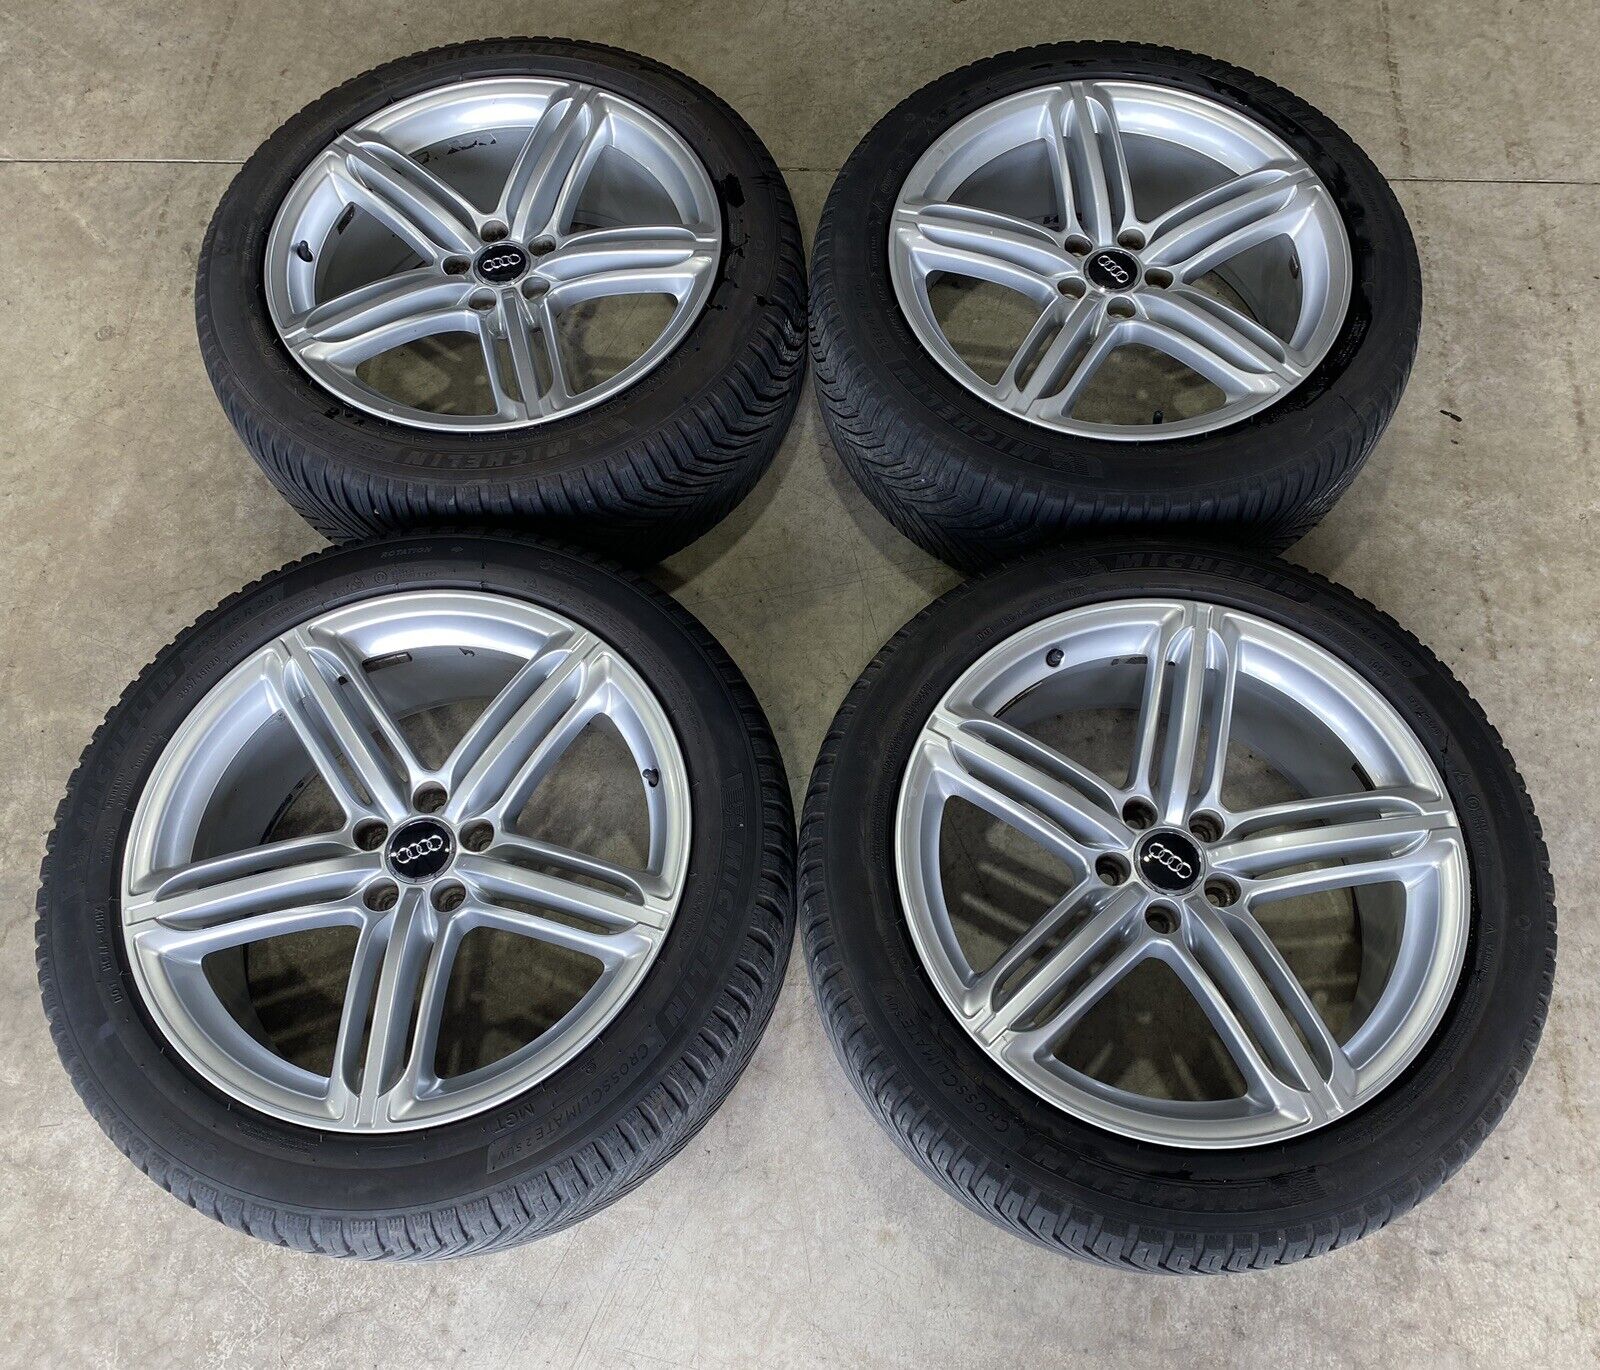 20” Genuine Q5 Alloy Wheels & Tyres